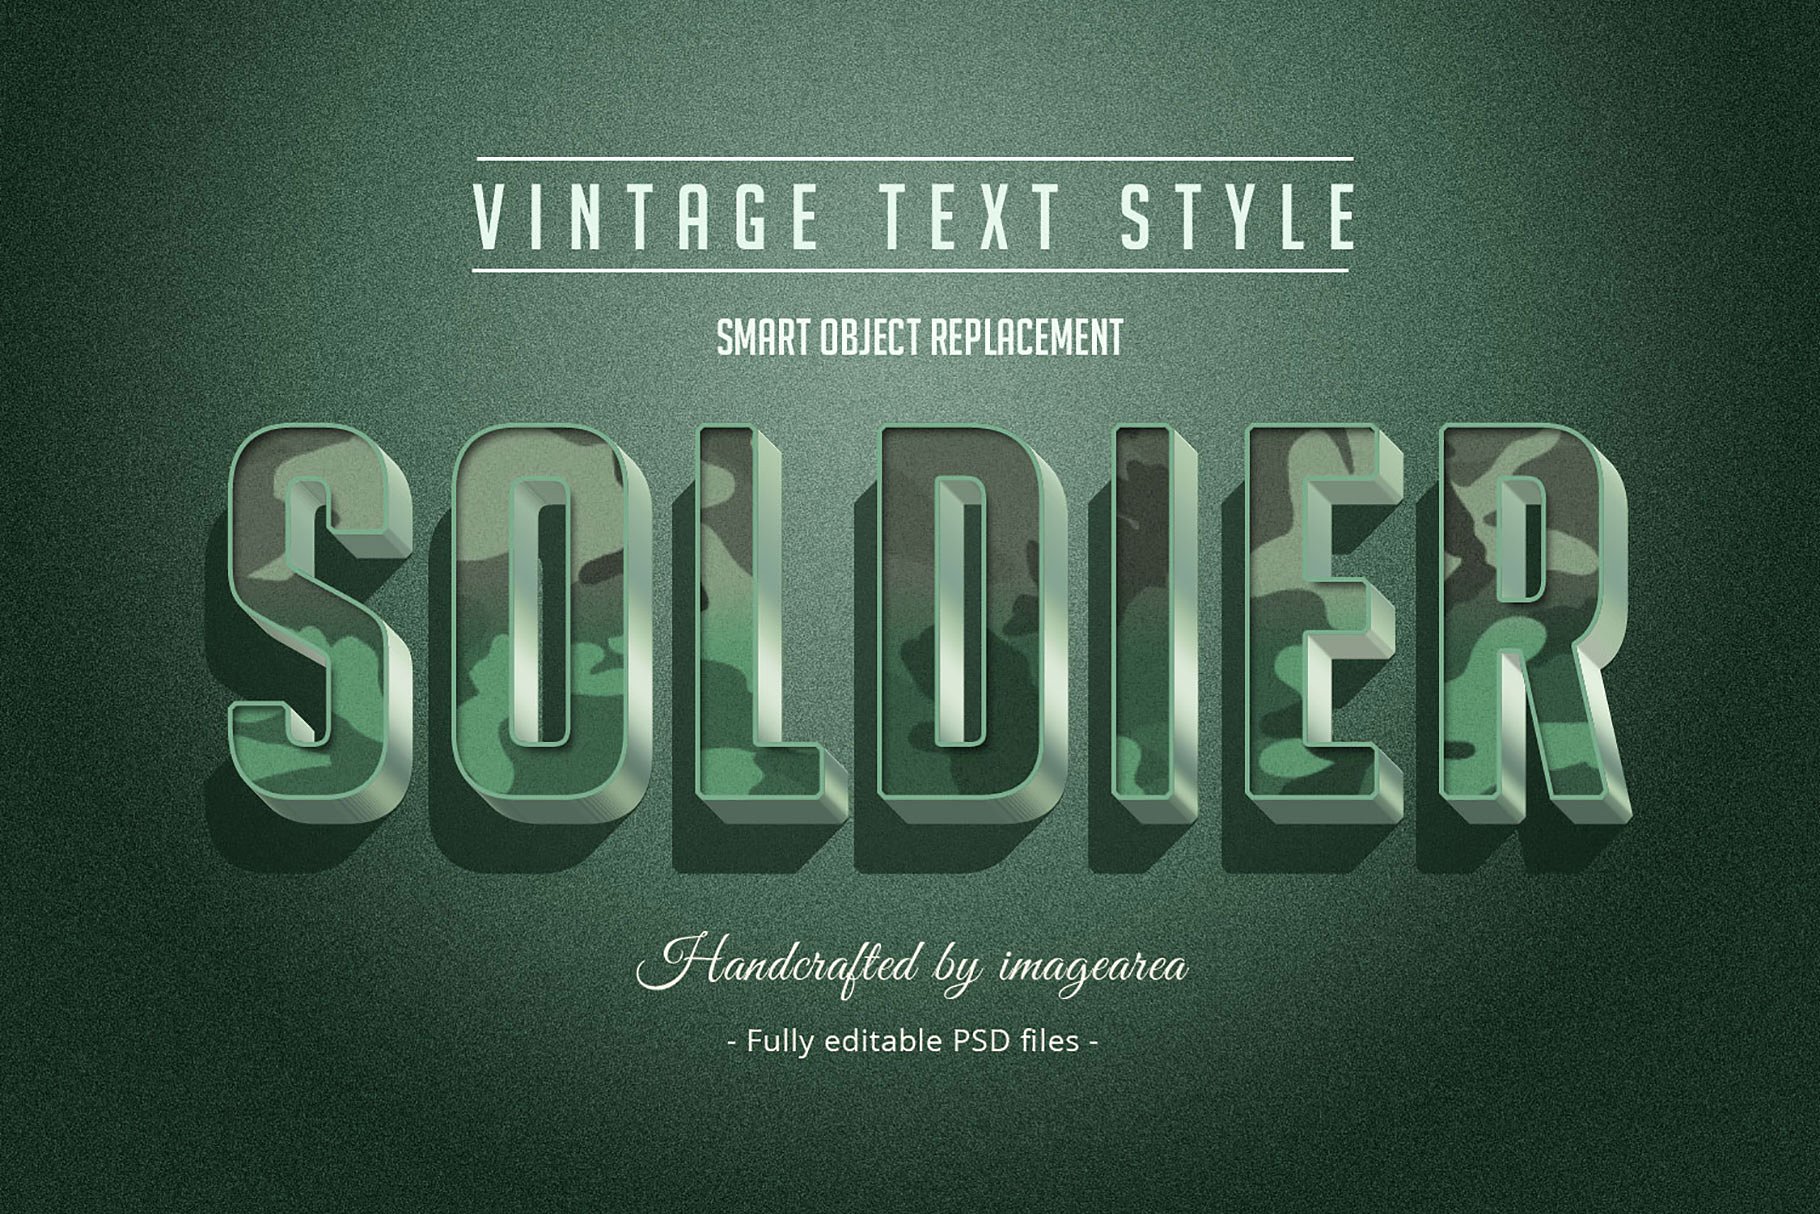 复古条纹风格文本图层样式 Vintage / Retro Text Styles插图(4)